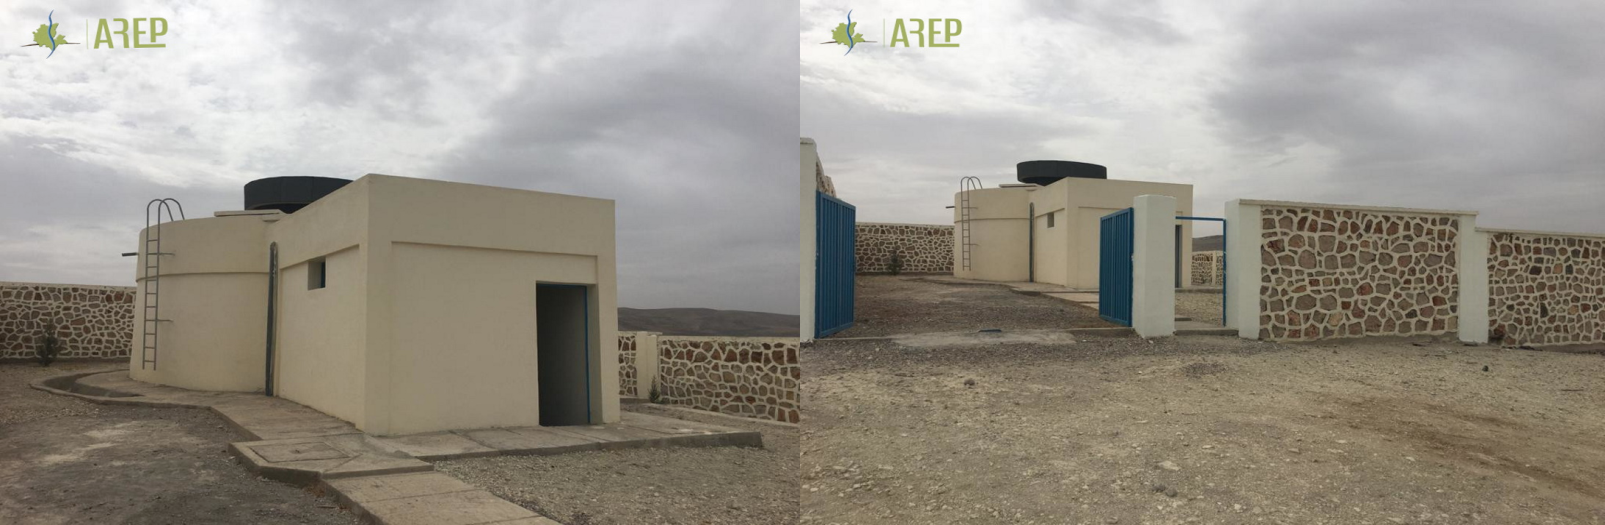 Fin des travaux d’alimentation en eau potable par branchement individuel des douars Labrarcha, Ouled Lghnaoui et Ouled Bouriss à la commune de Moulay Yaacoub – 